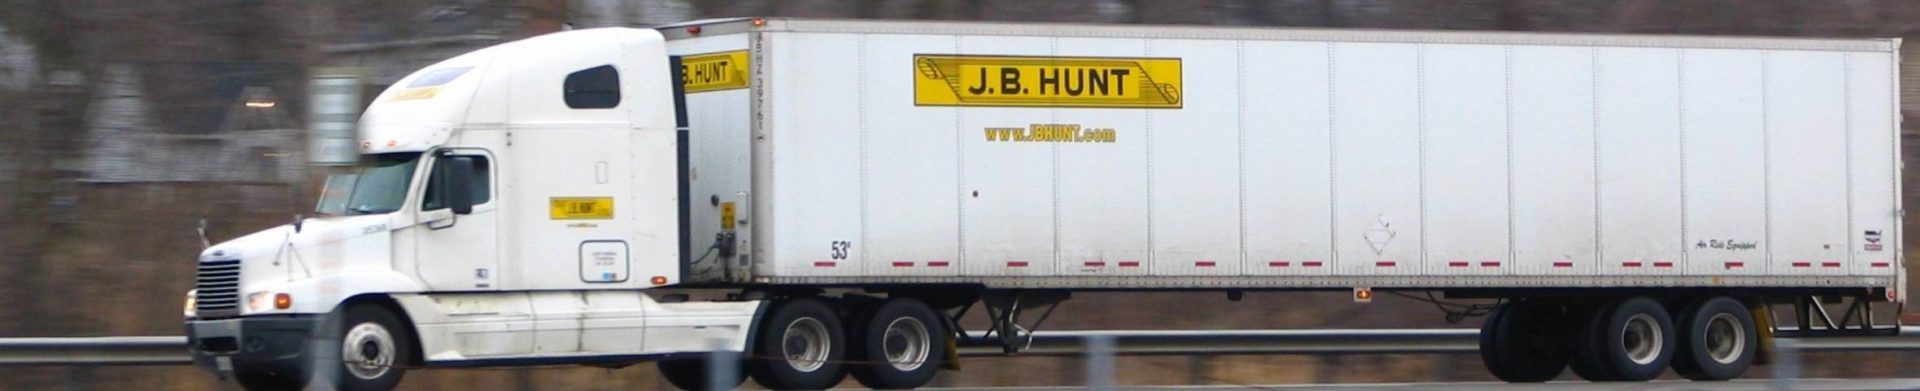 a J.B. Hunt Transport truck